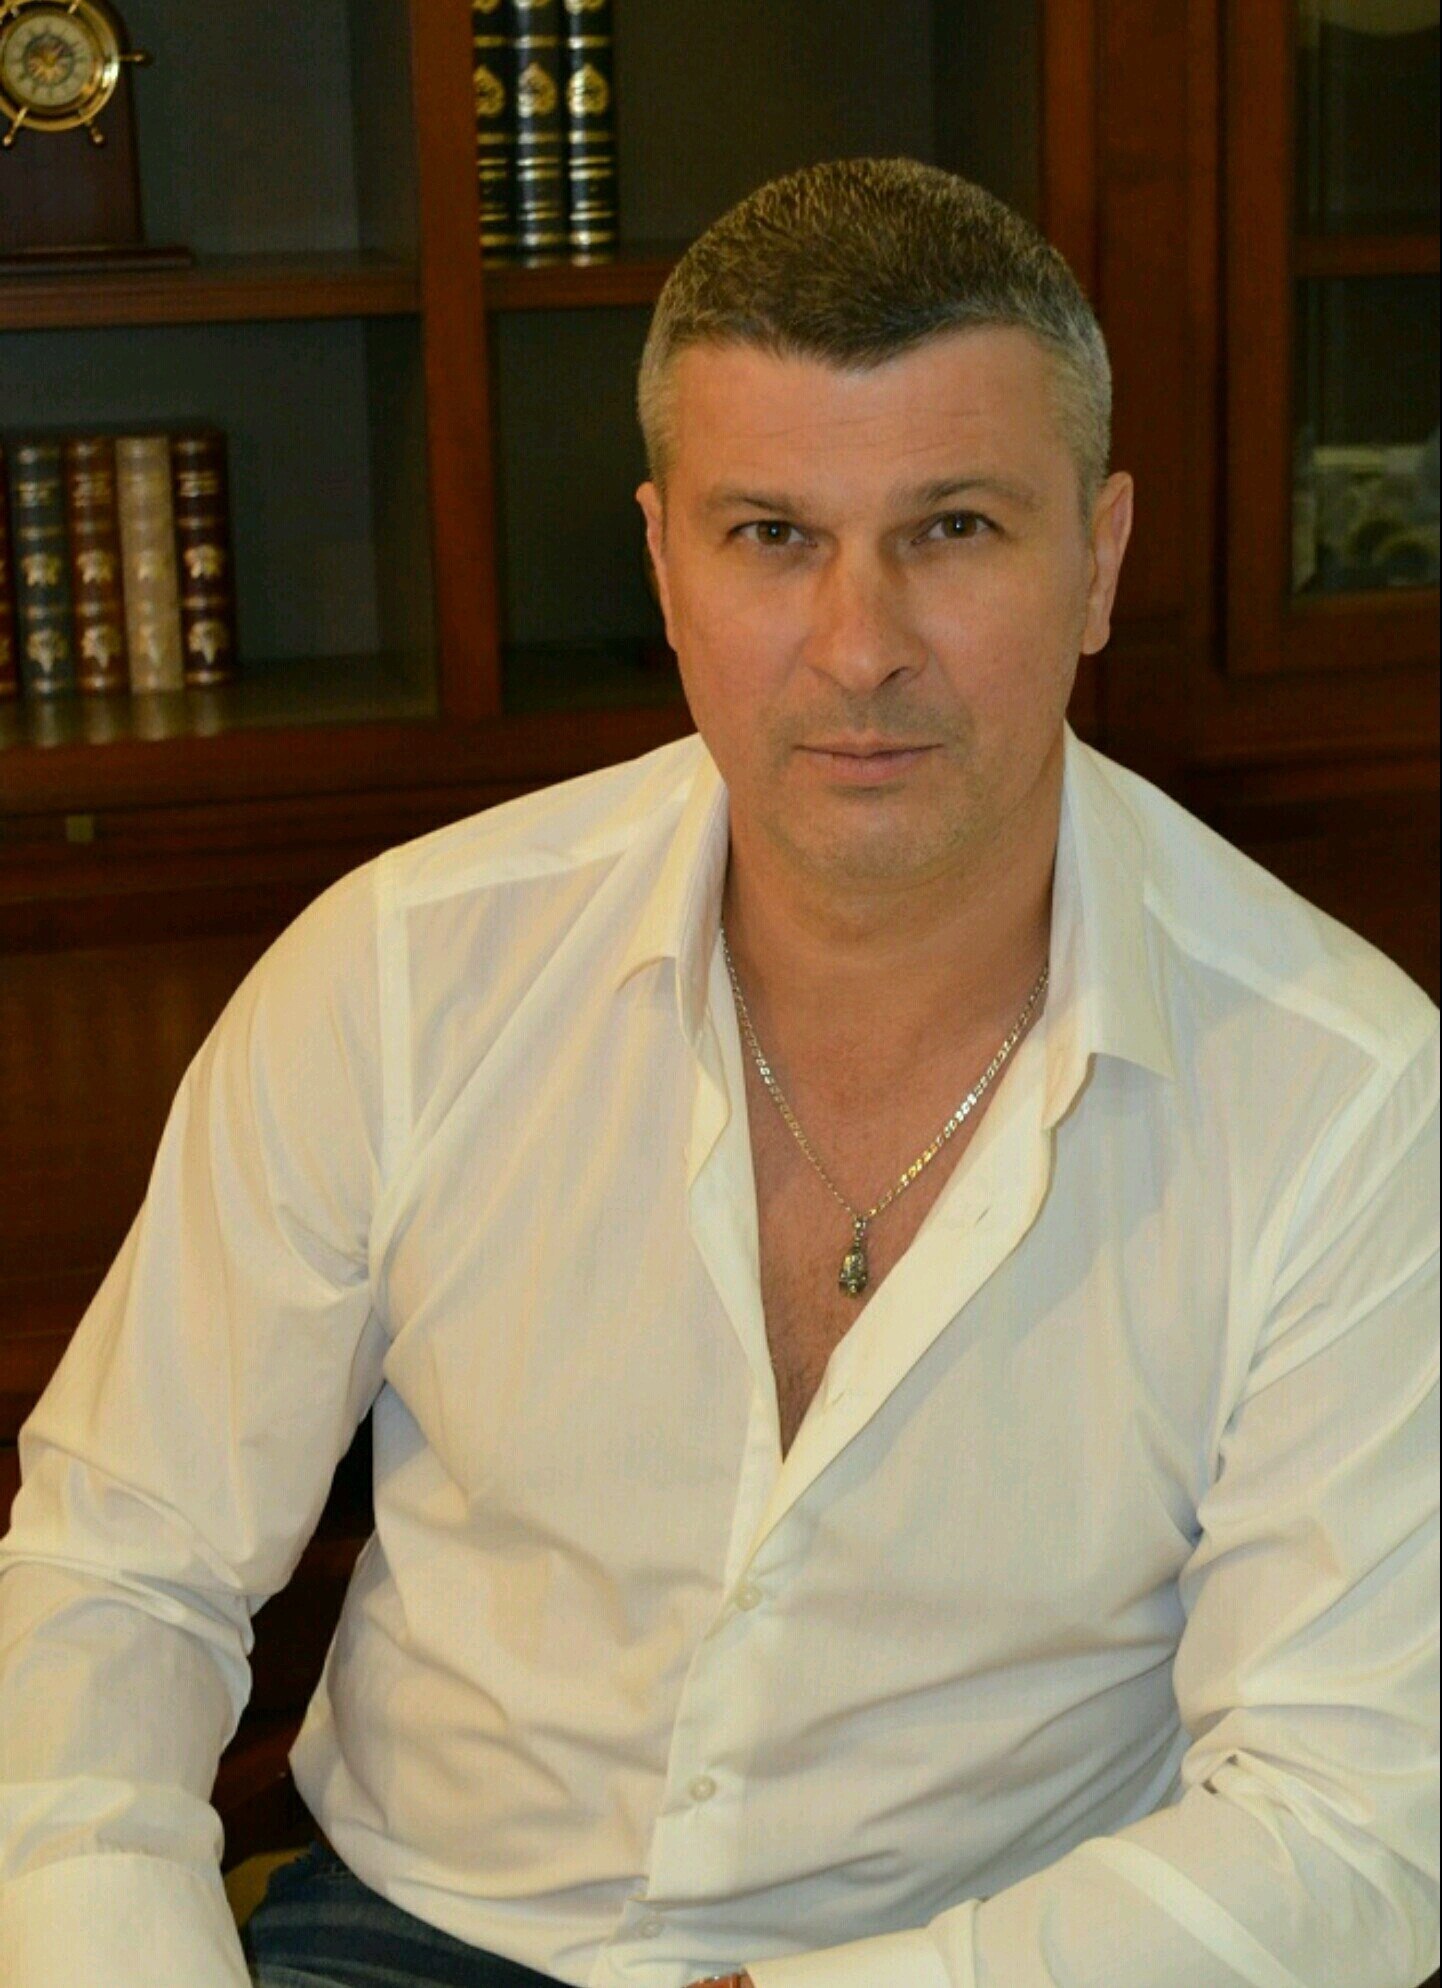 фото мужчины дмитрий ефремов 43 года